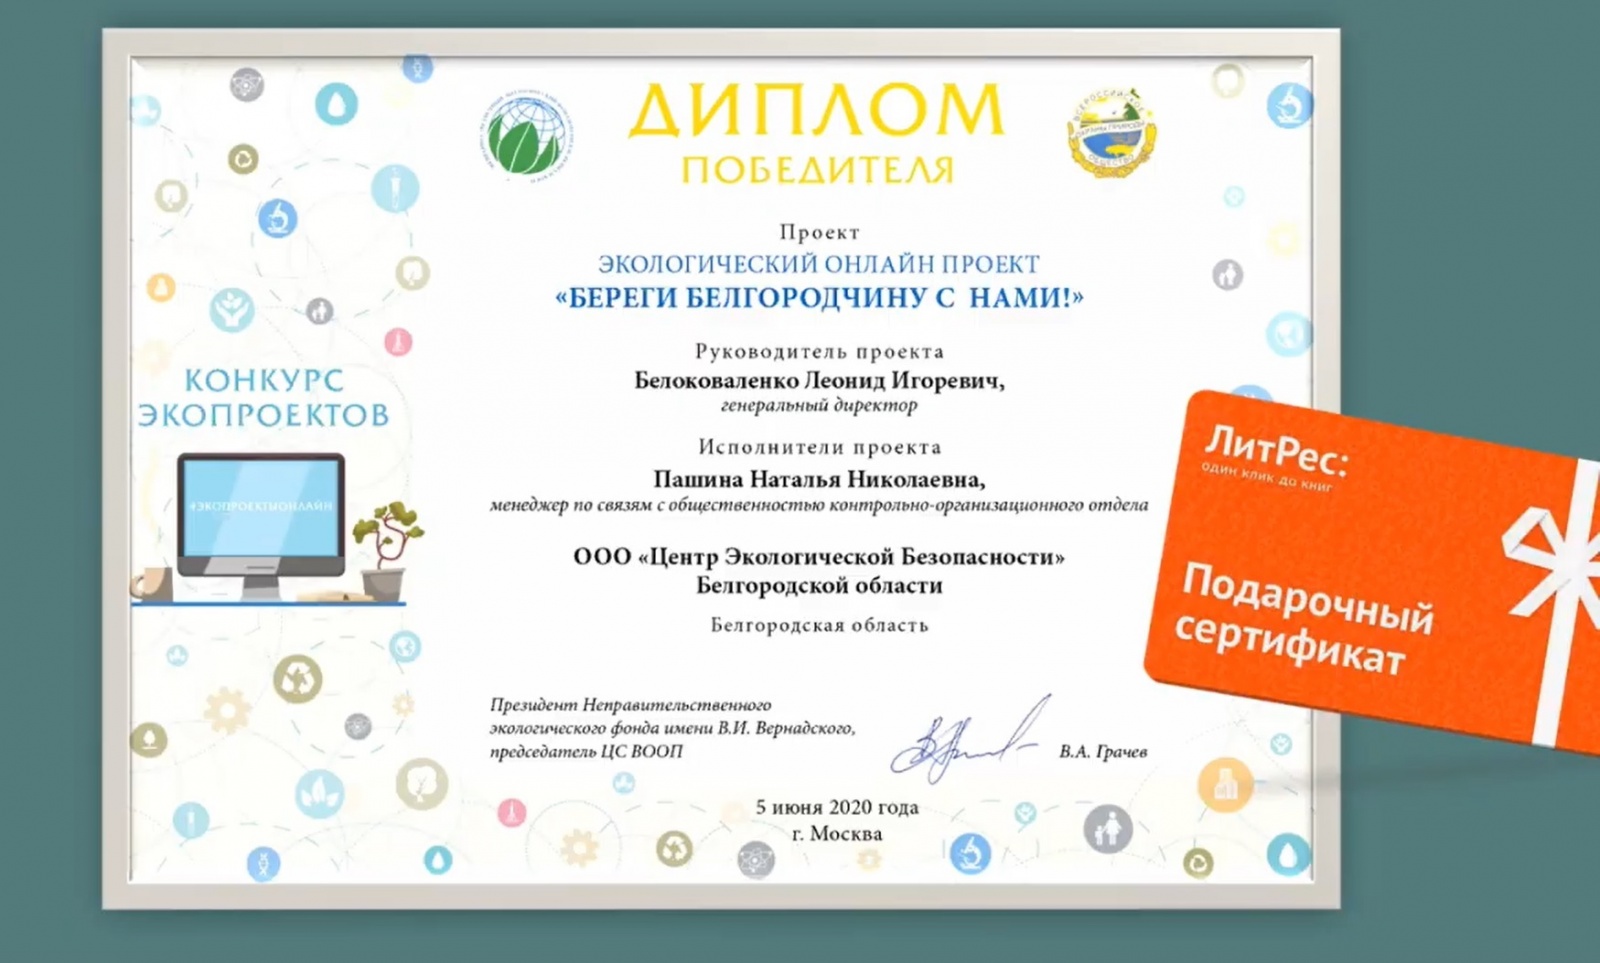 ооо «цэб» одержало победу в конкурсе «экопроектов онлайн», проводимом фондом имени в.и. вернадского